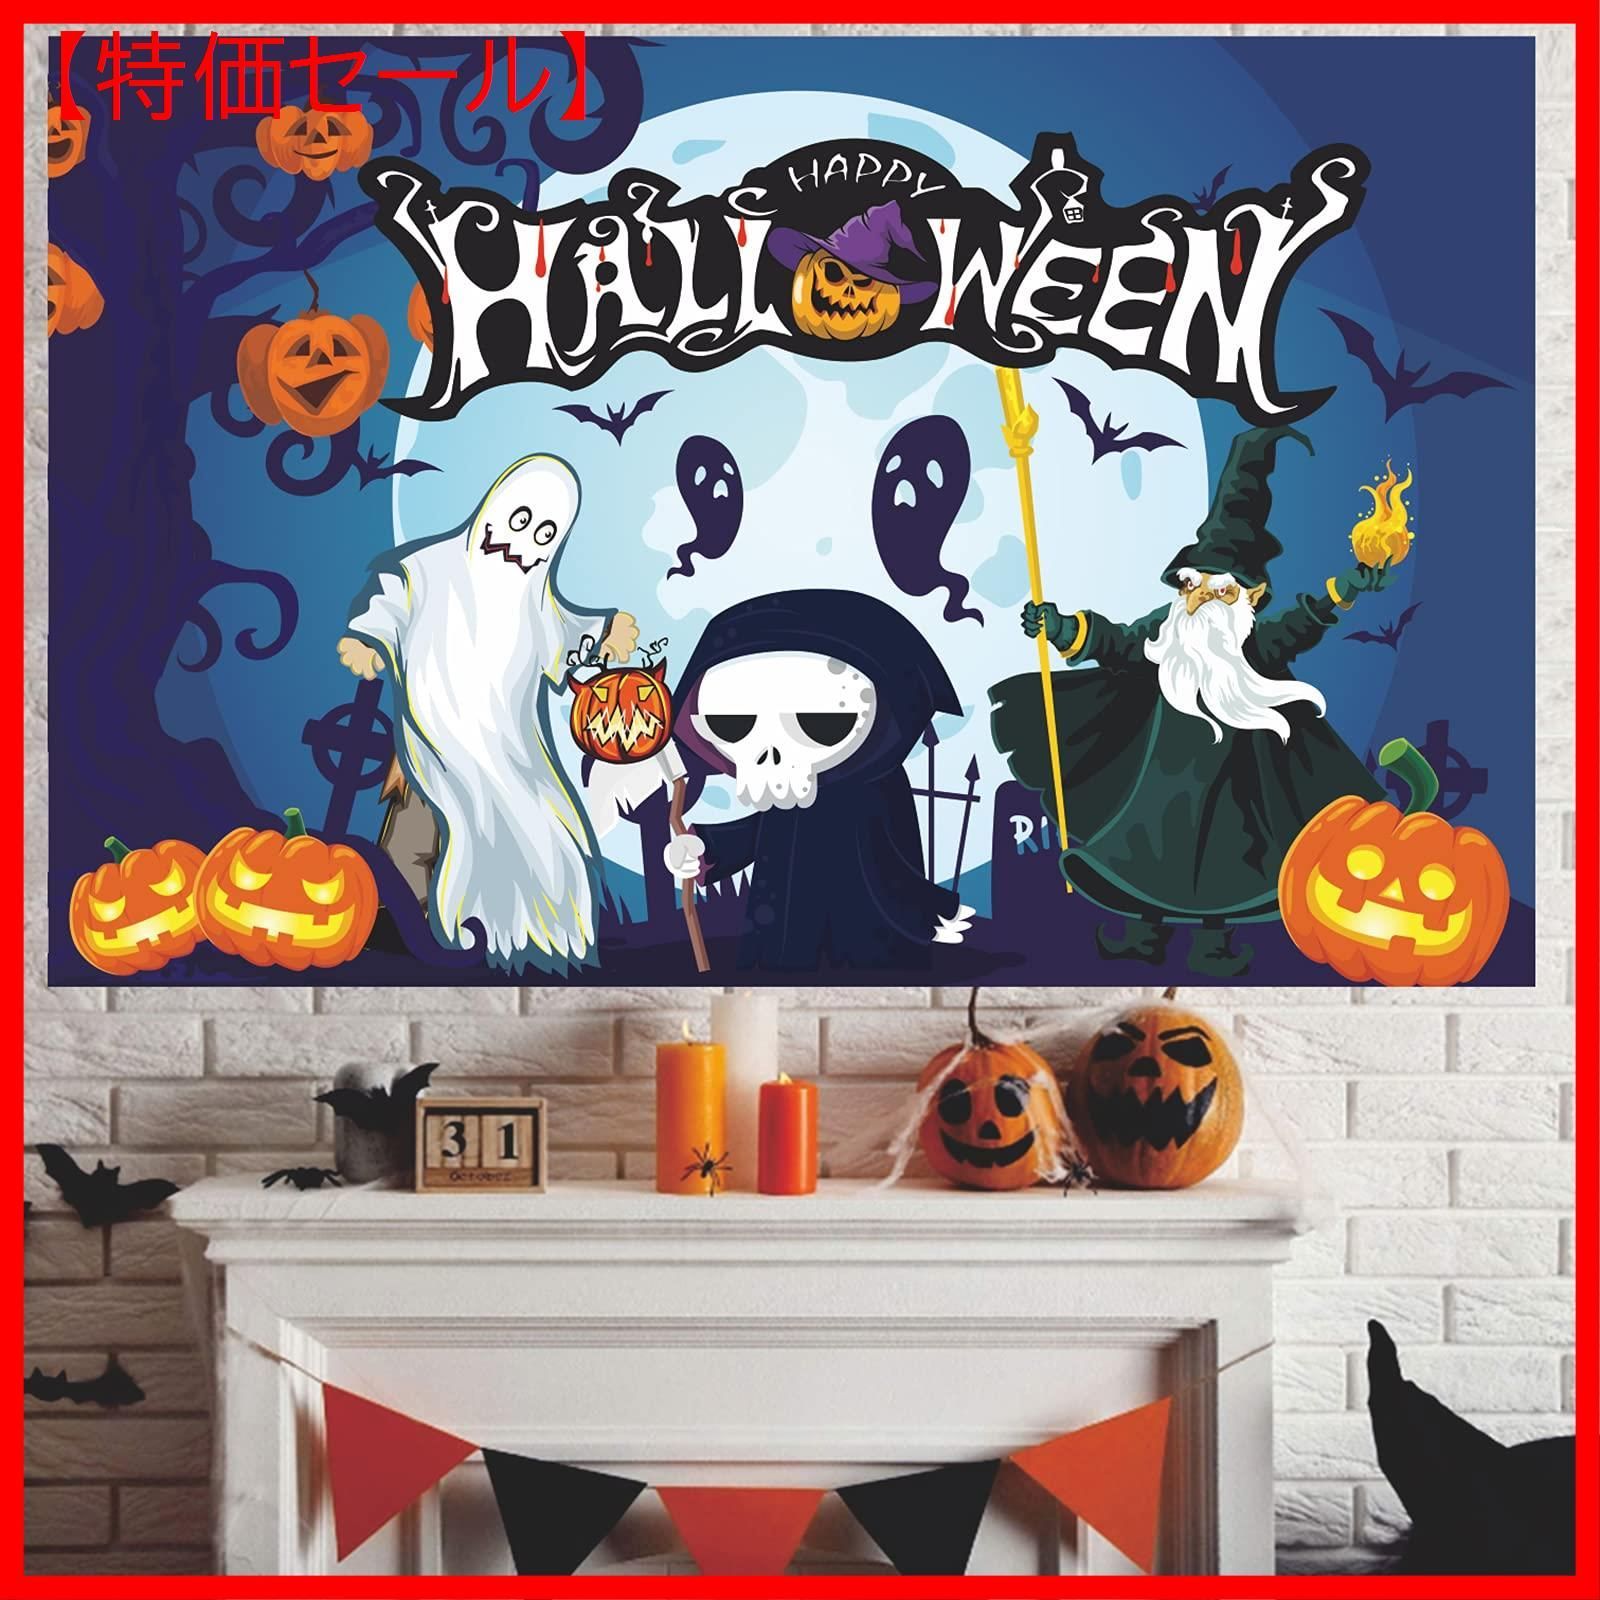 ハロウィン タペストリー 壁掛け ポスター フォト 背景布  Halloween